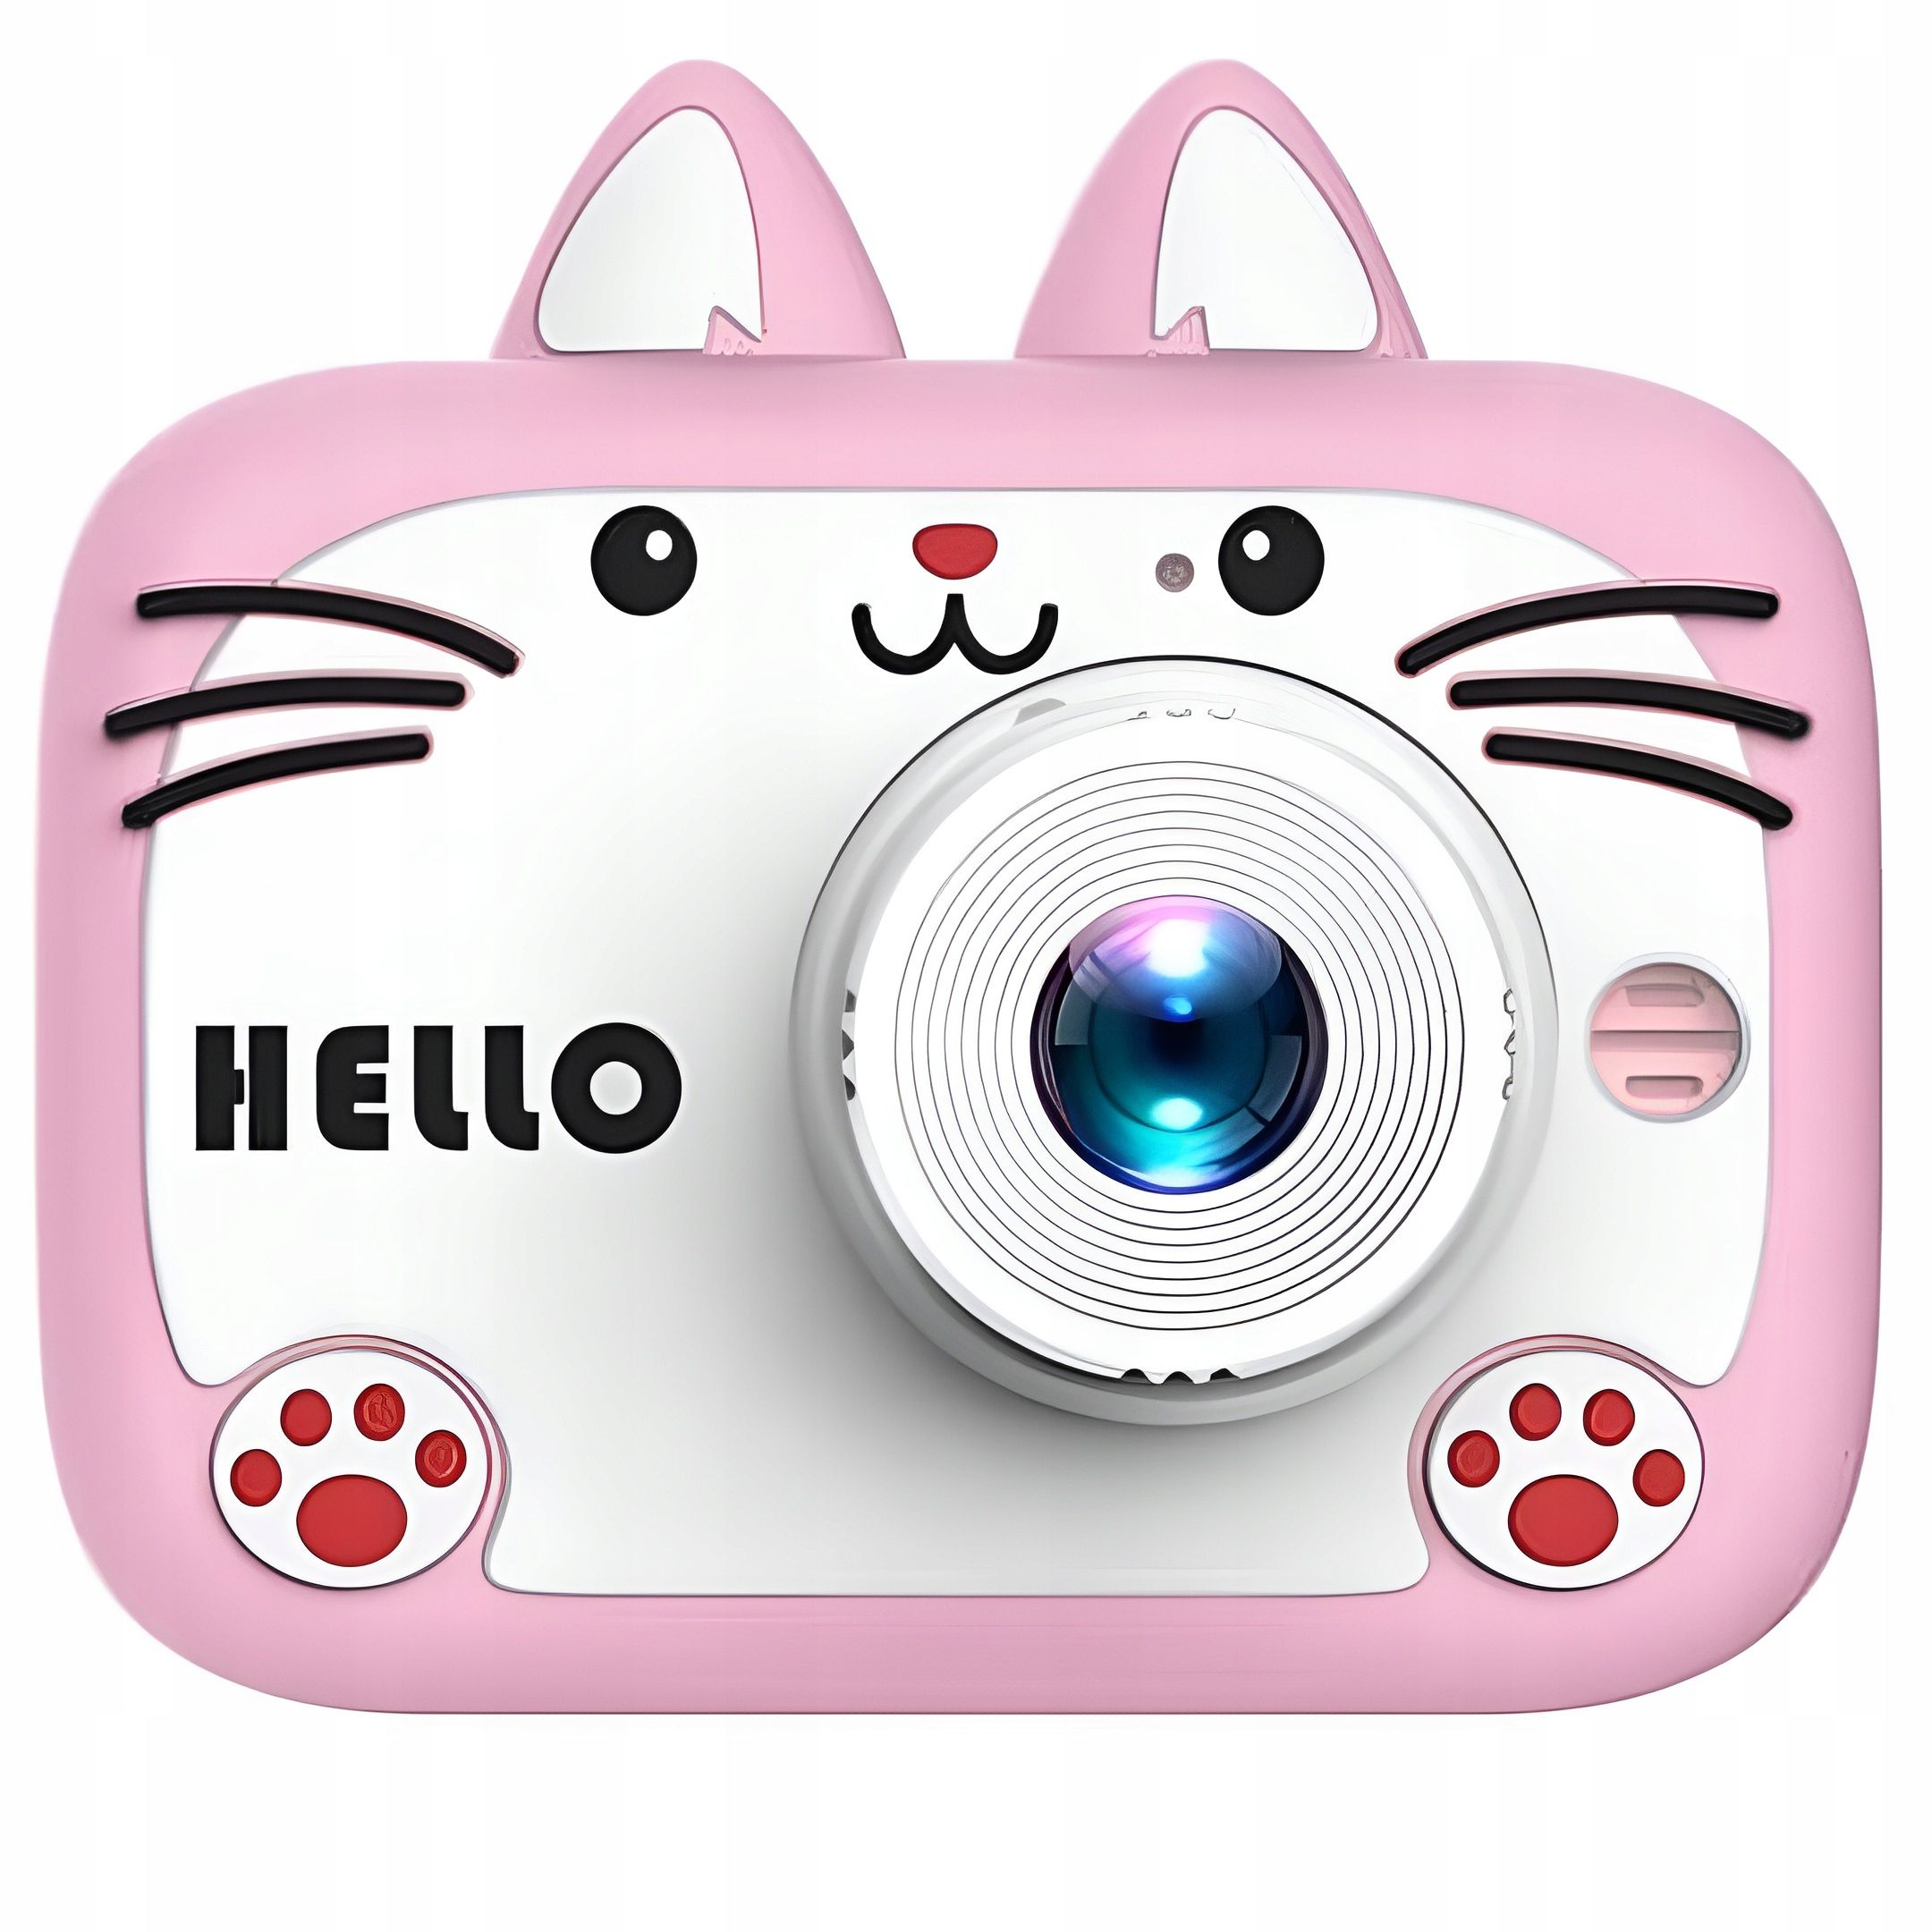 Aparat Cyfrowy Dla Dzieci Kamera Zabawka 40Mpx + Karta 32Gb - Różowy